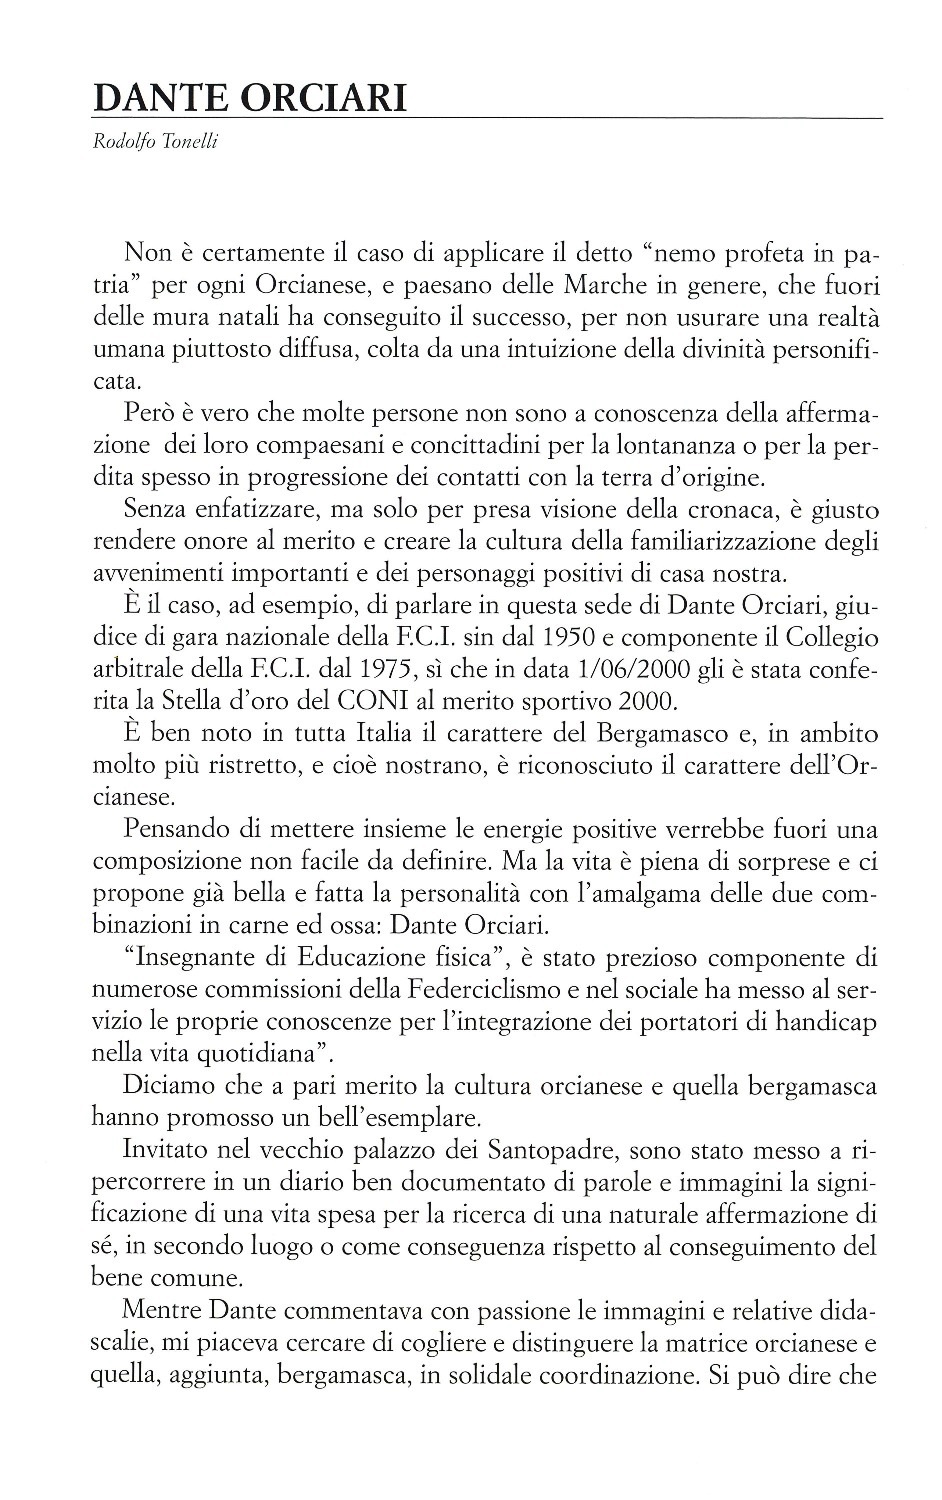 La torr i arduna tutti 2009 p.047